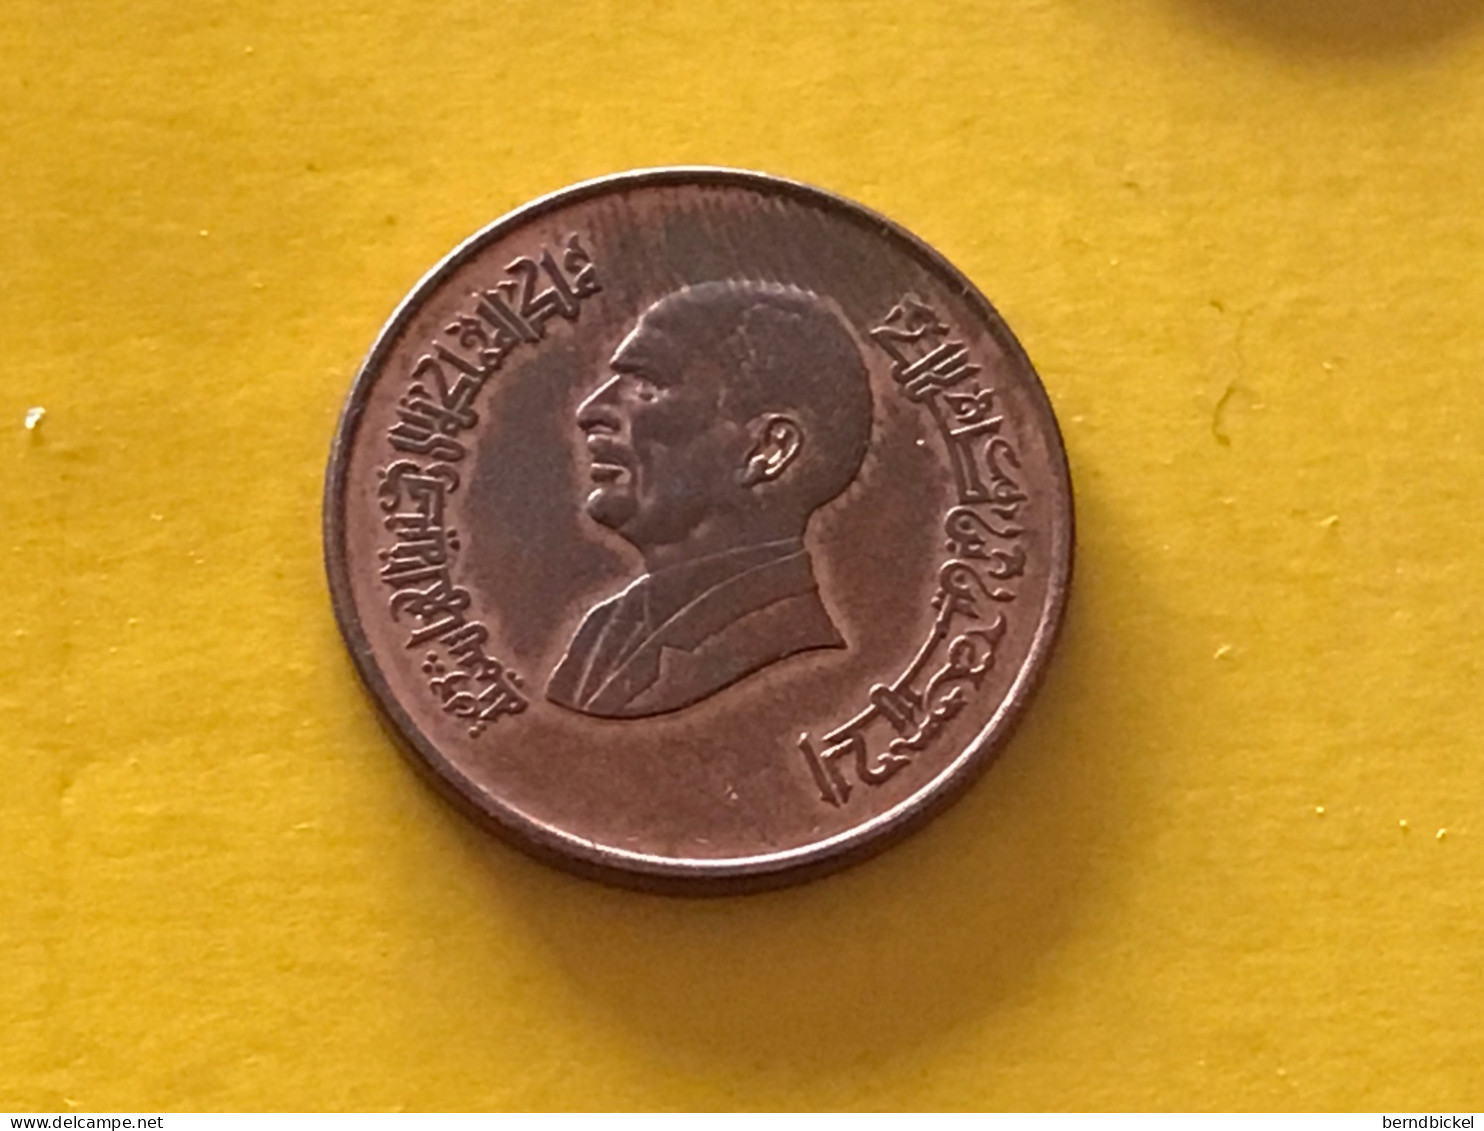 Münze Münzen Umlaufmünze Jordanien 1/2 Quirsch 1996 - Jordanien